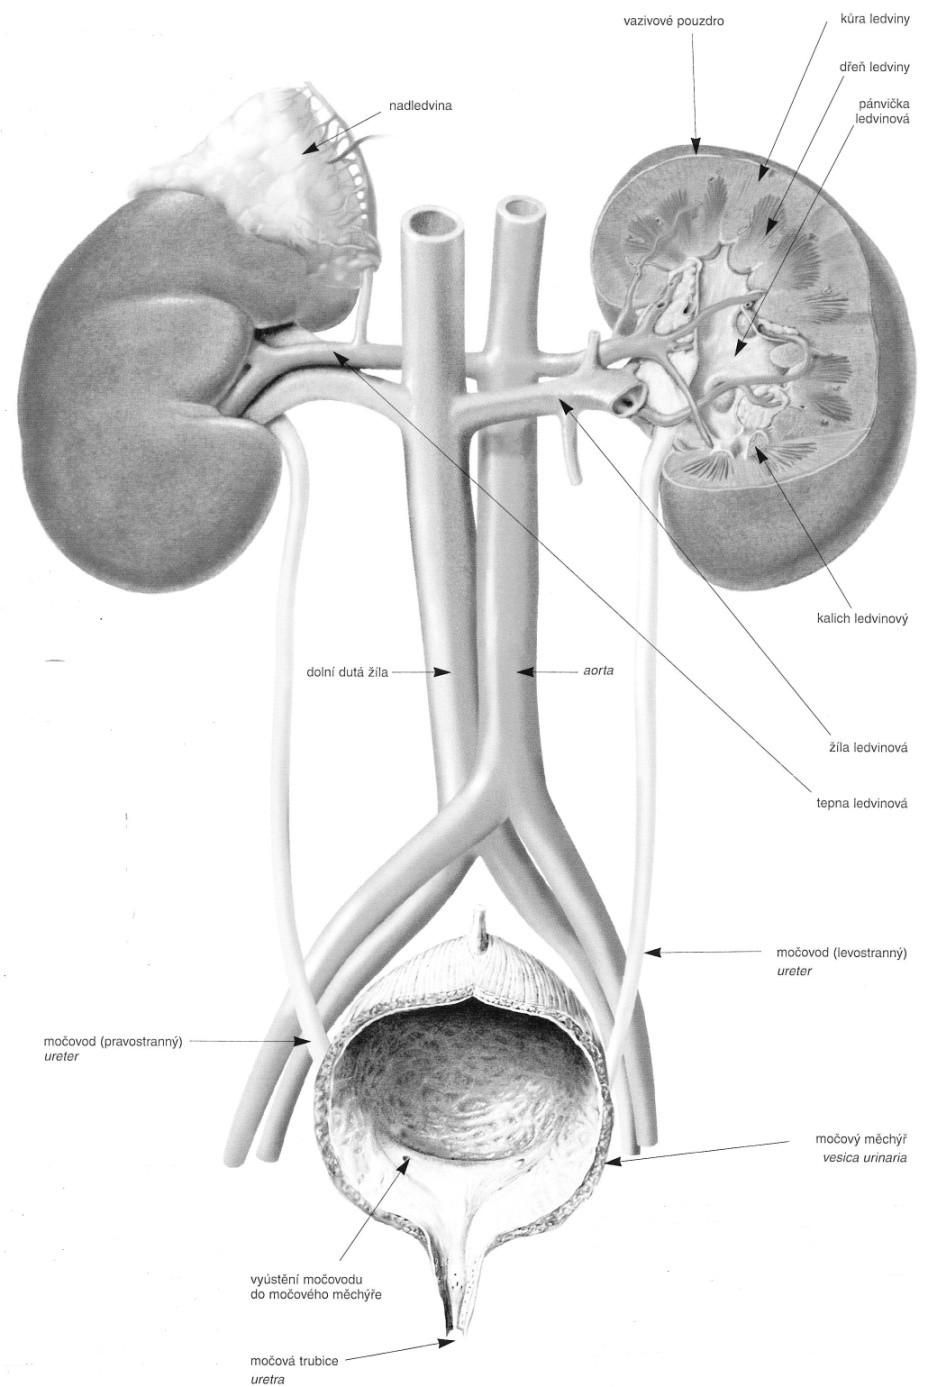 Soustava renální -hlavním exkrečním orgánem jsou párové ledviny ( ren dexter,sinister) -vývodné cesty močové: Párové CALICES RENALES